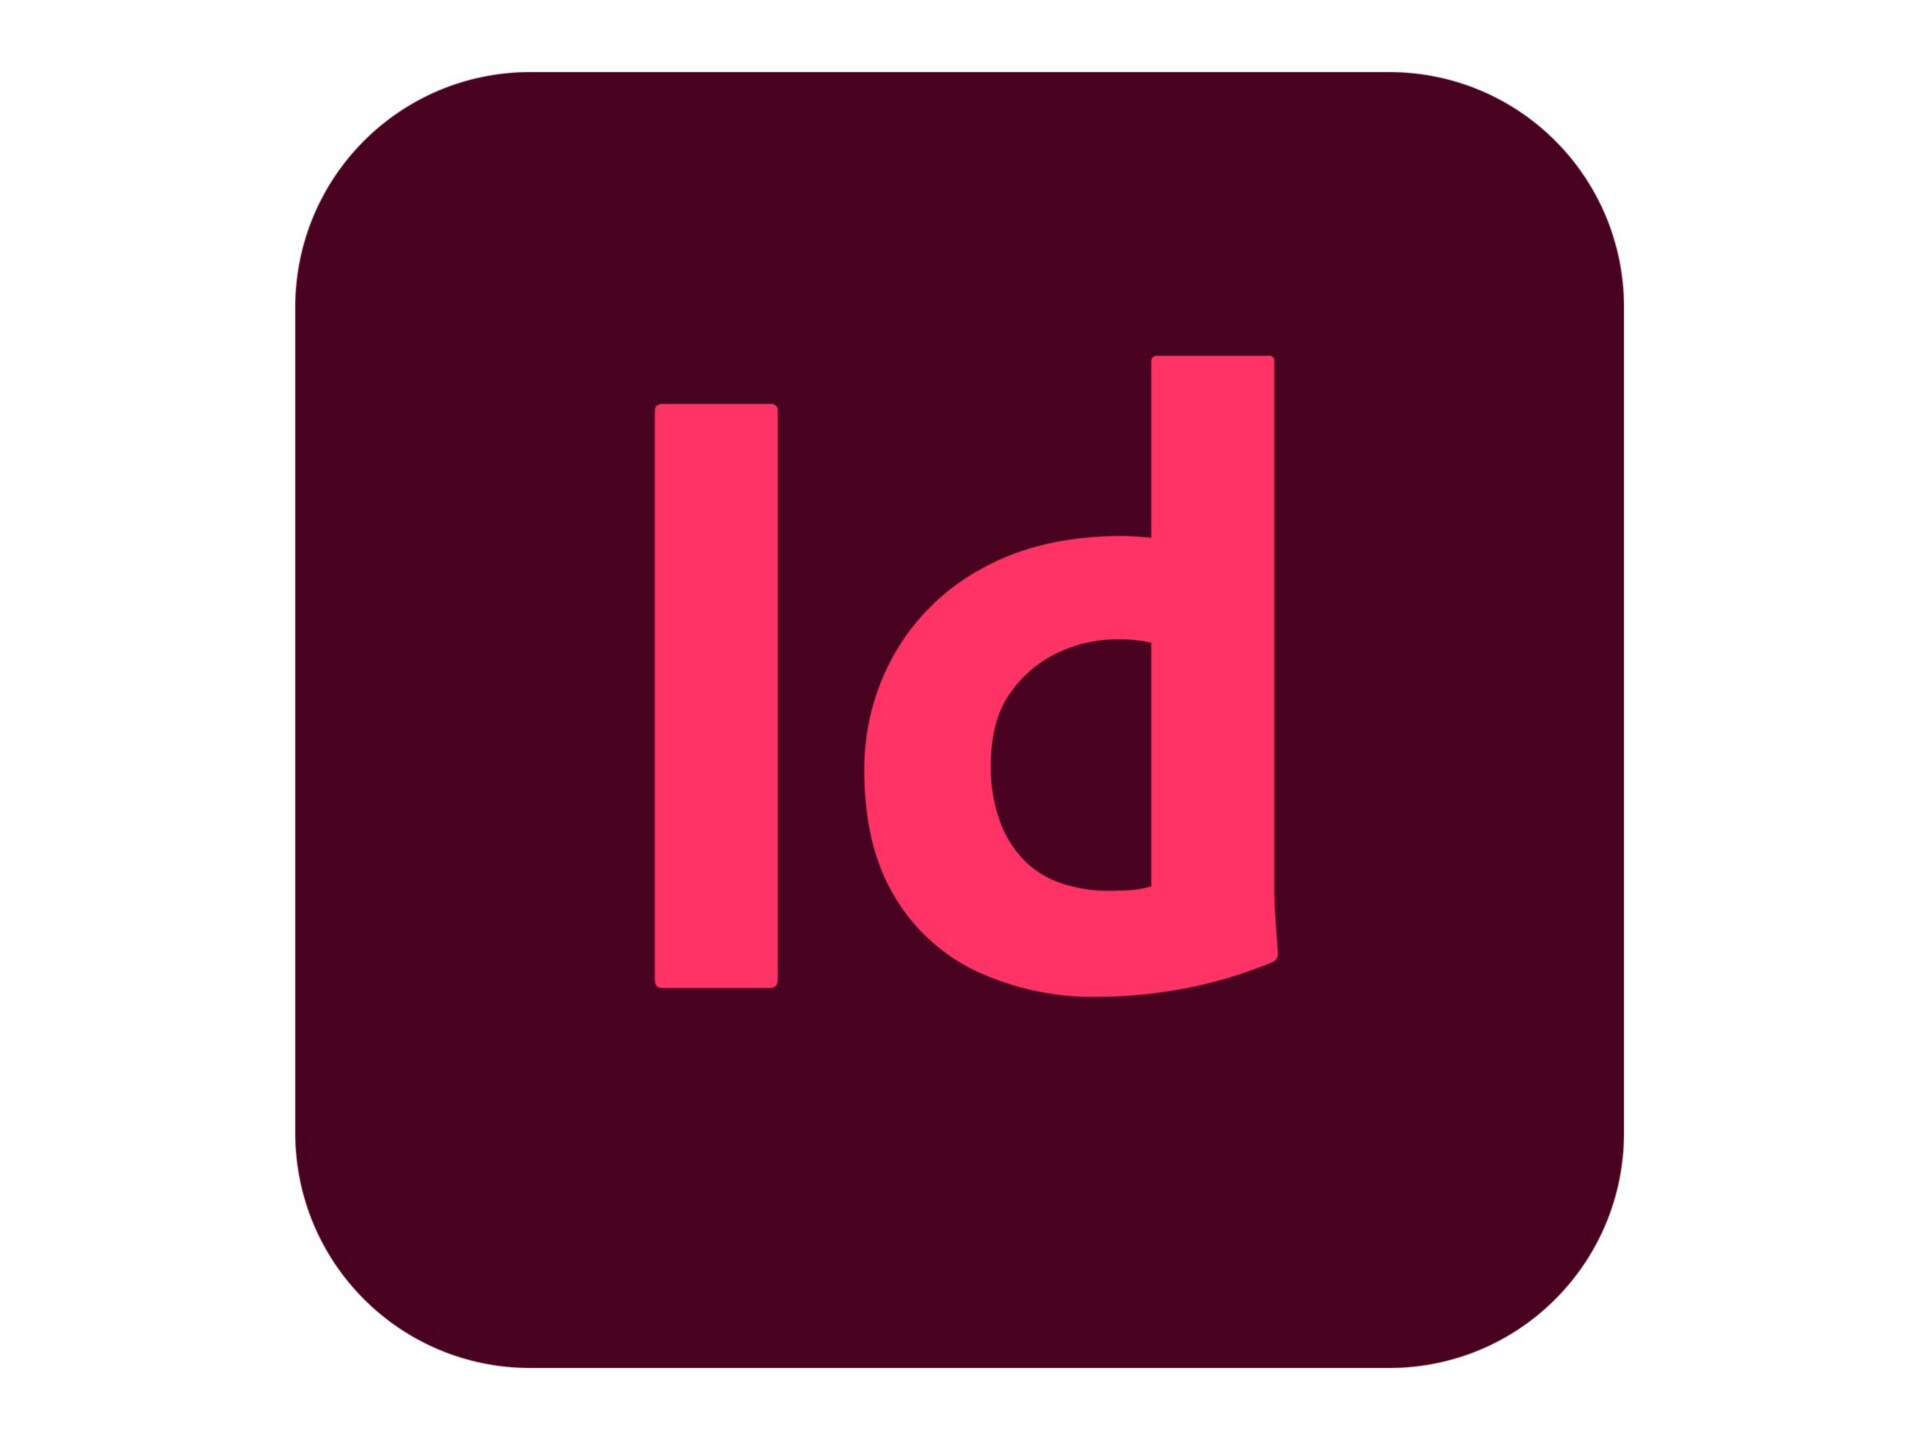 Adobe InDesign CC for Enterprise - Subscription New (17 months) - 1 named u